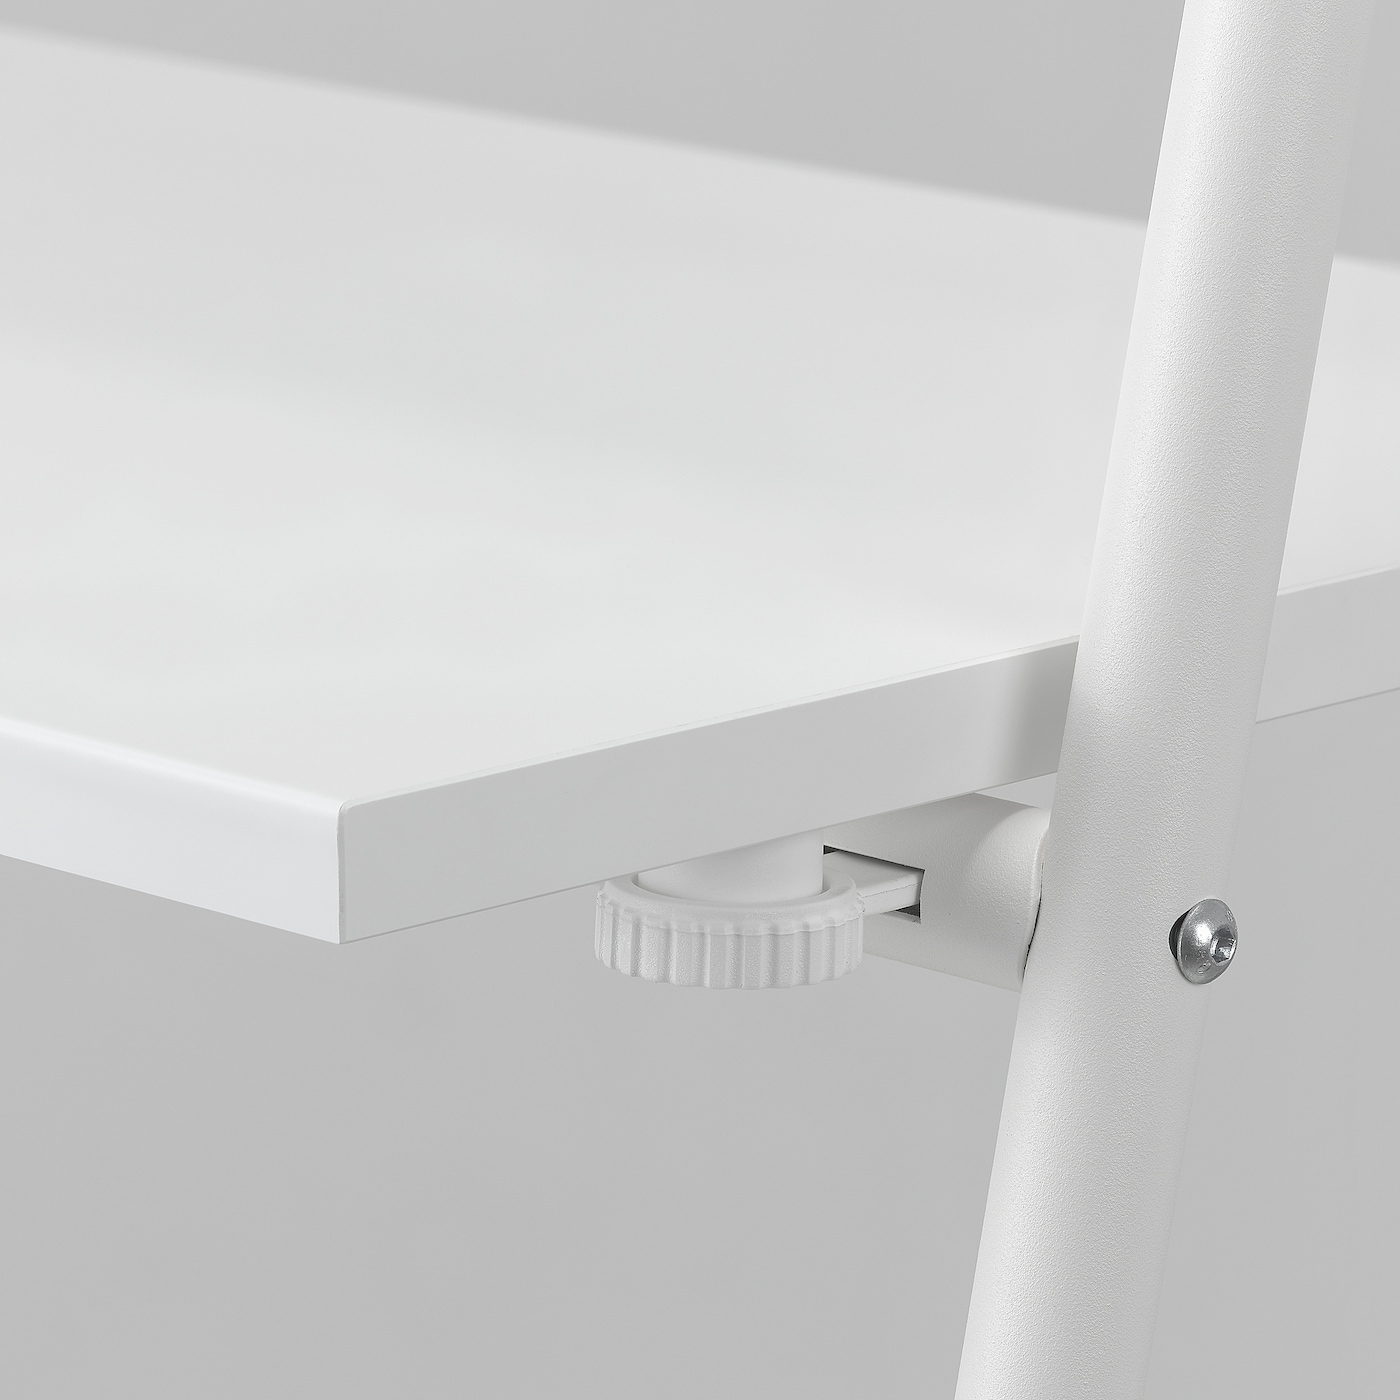 BJÖRKÅSEN folding table white - IKEA